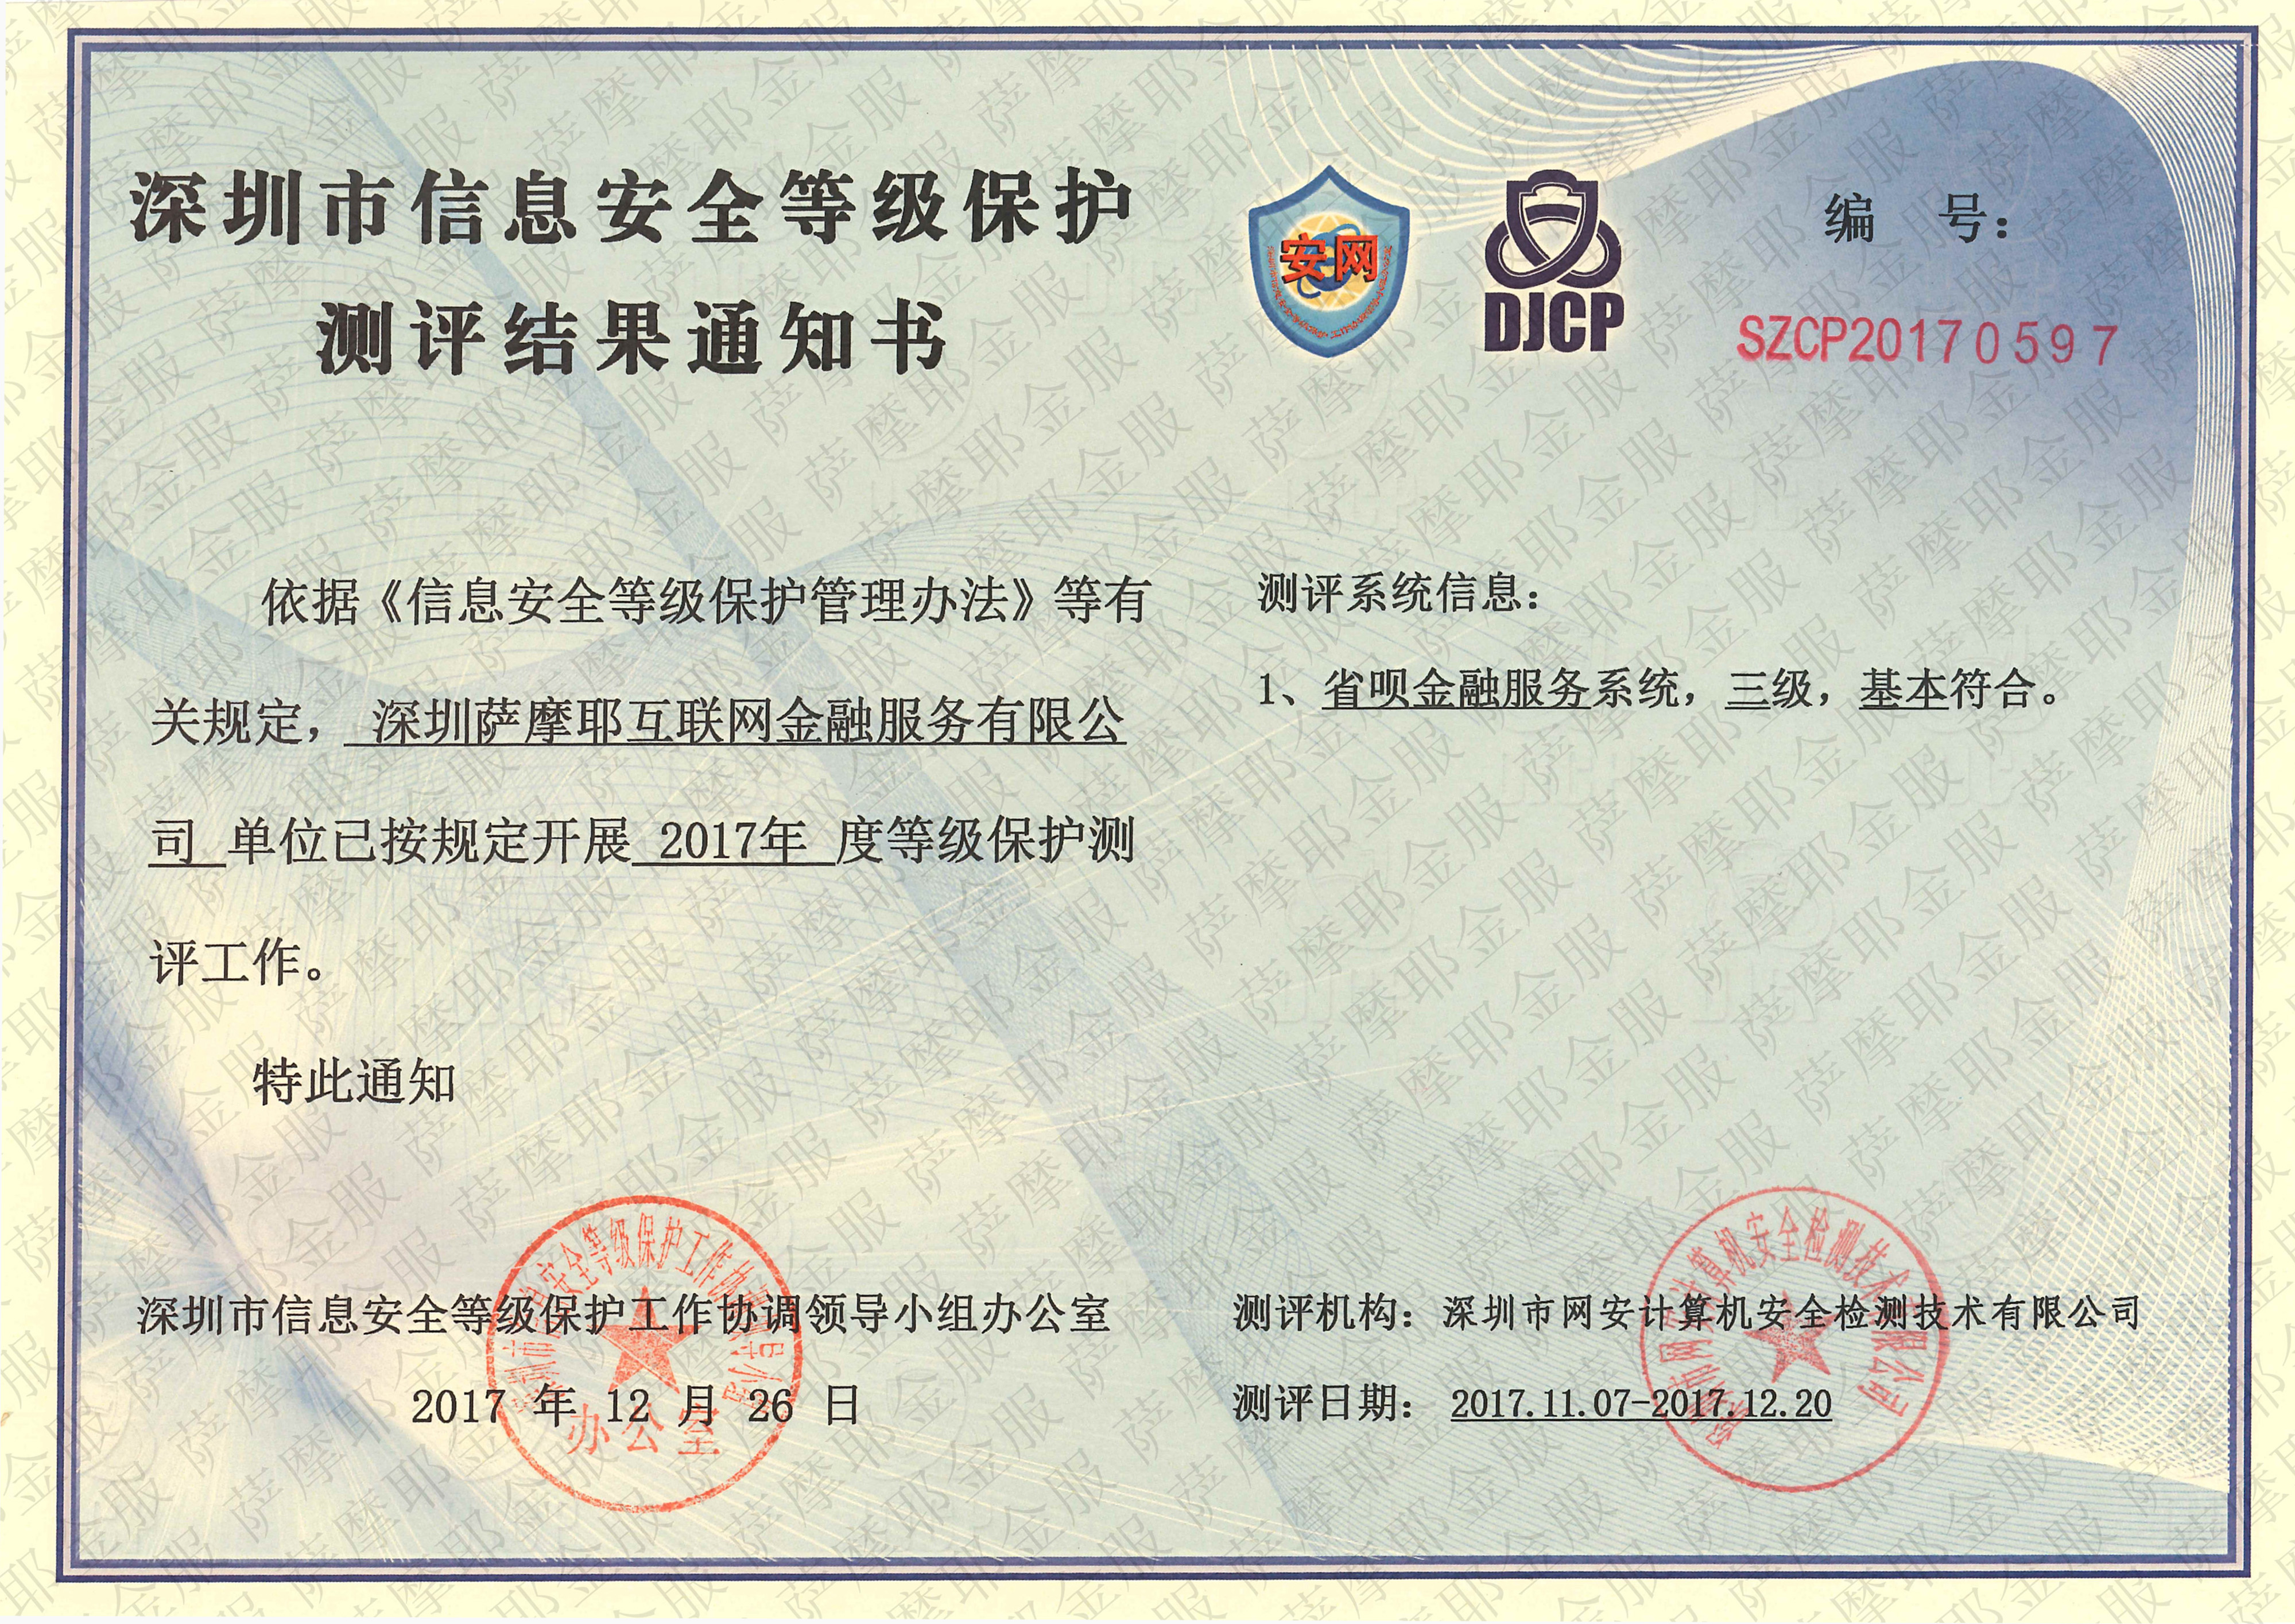 公安部等级保护测评(djcp)证书